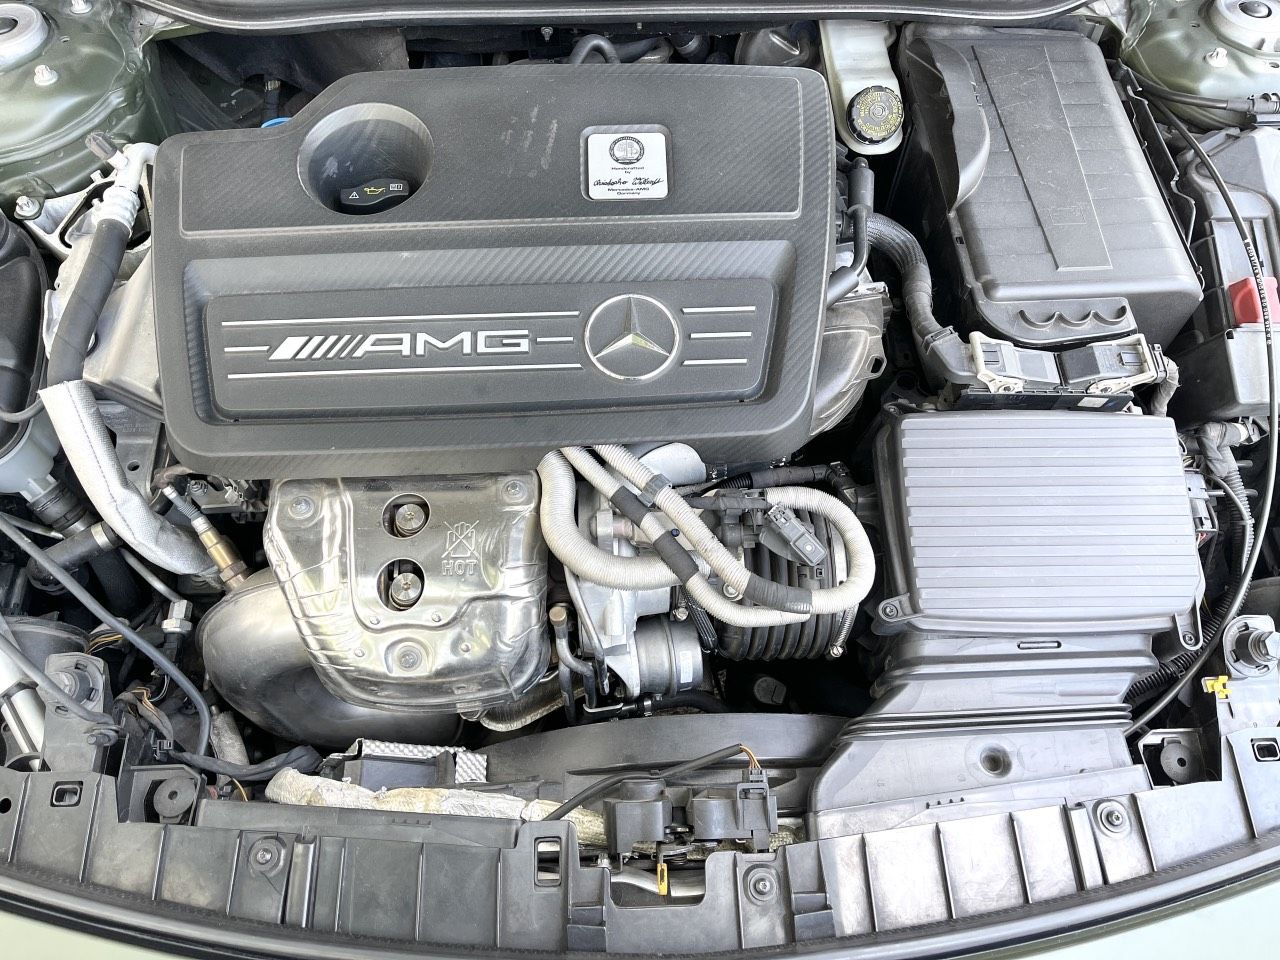 Mercedes-Benz GLA 45 2015 - Nhập Mỹ 2015 máy 2.0 - Full đồ chơi cao cấp